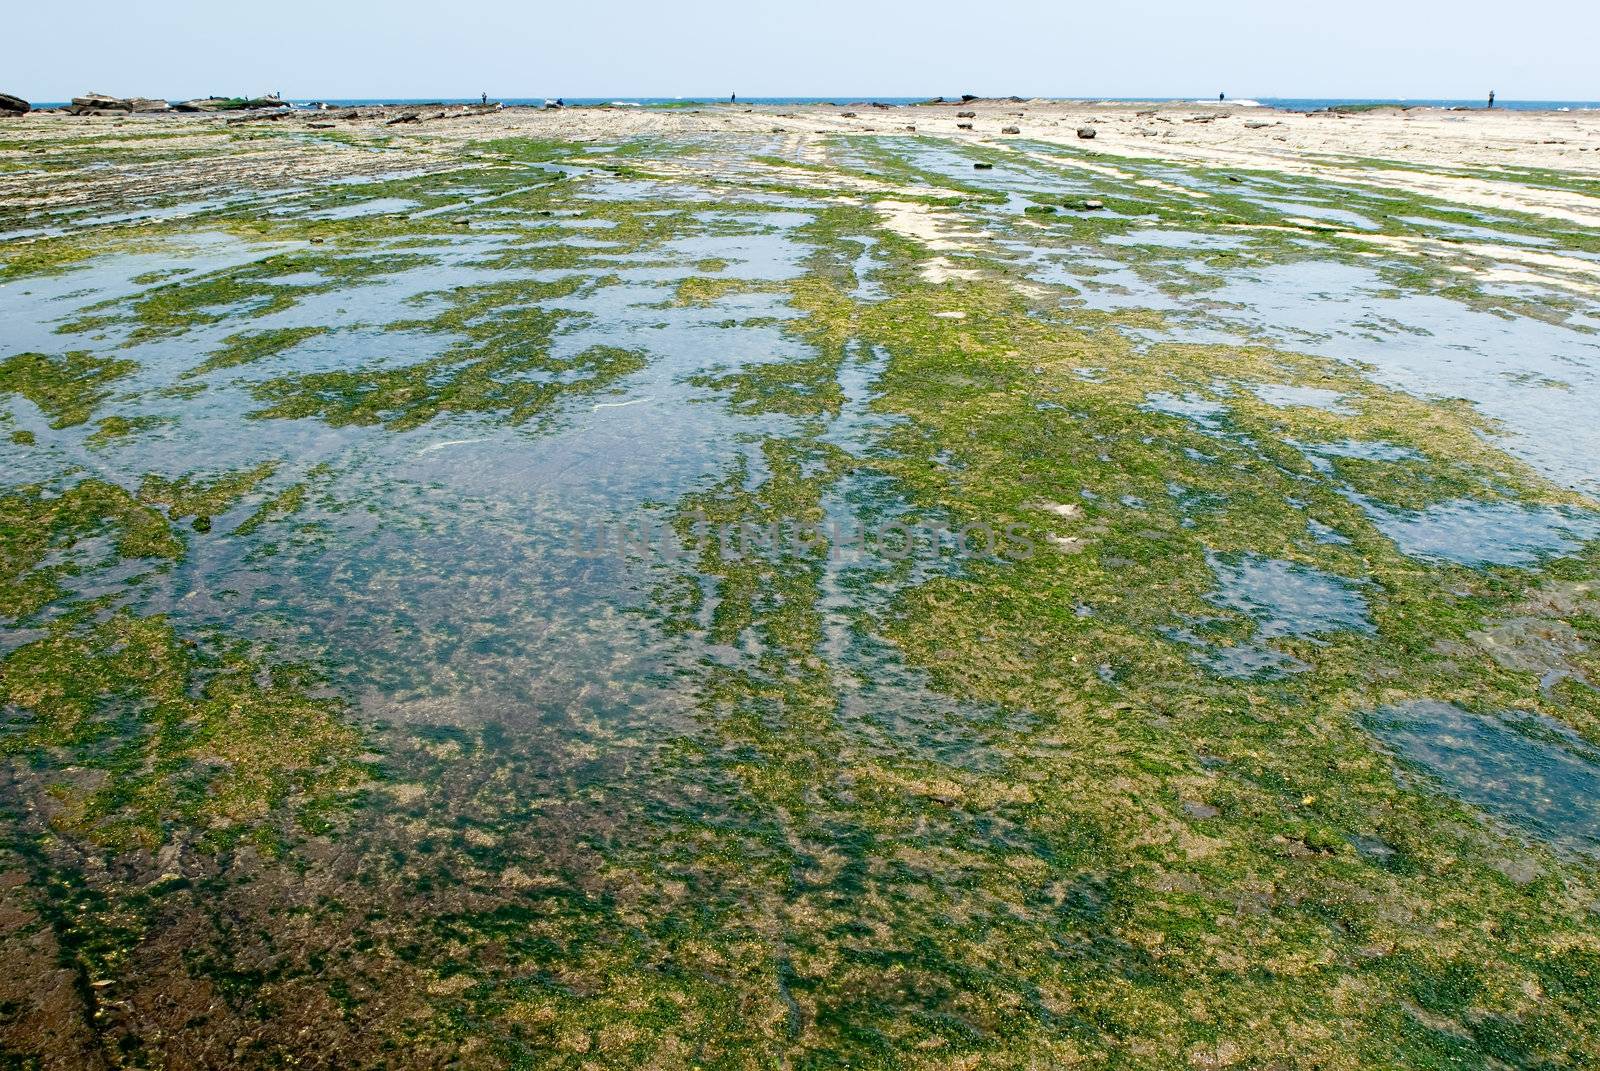 It is a green seaweed rock land.